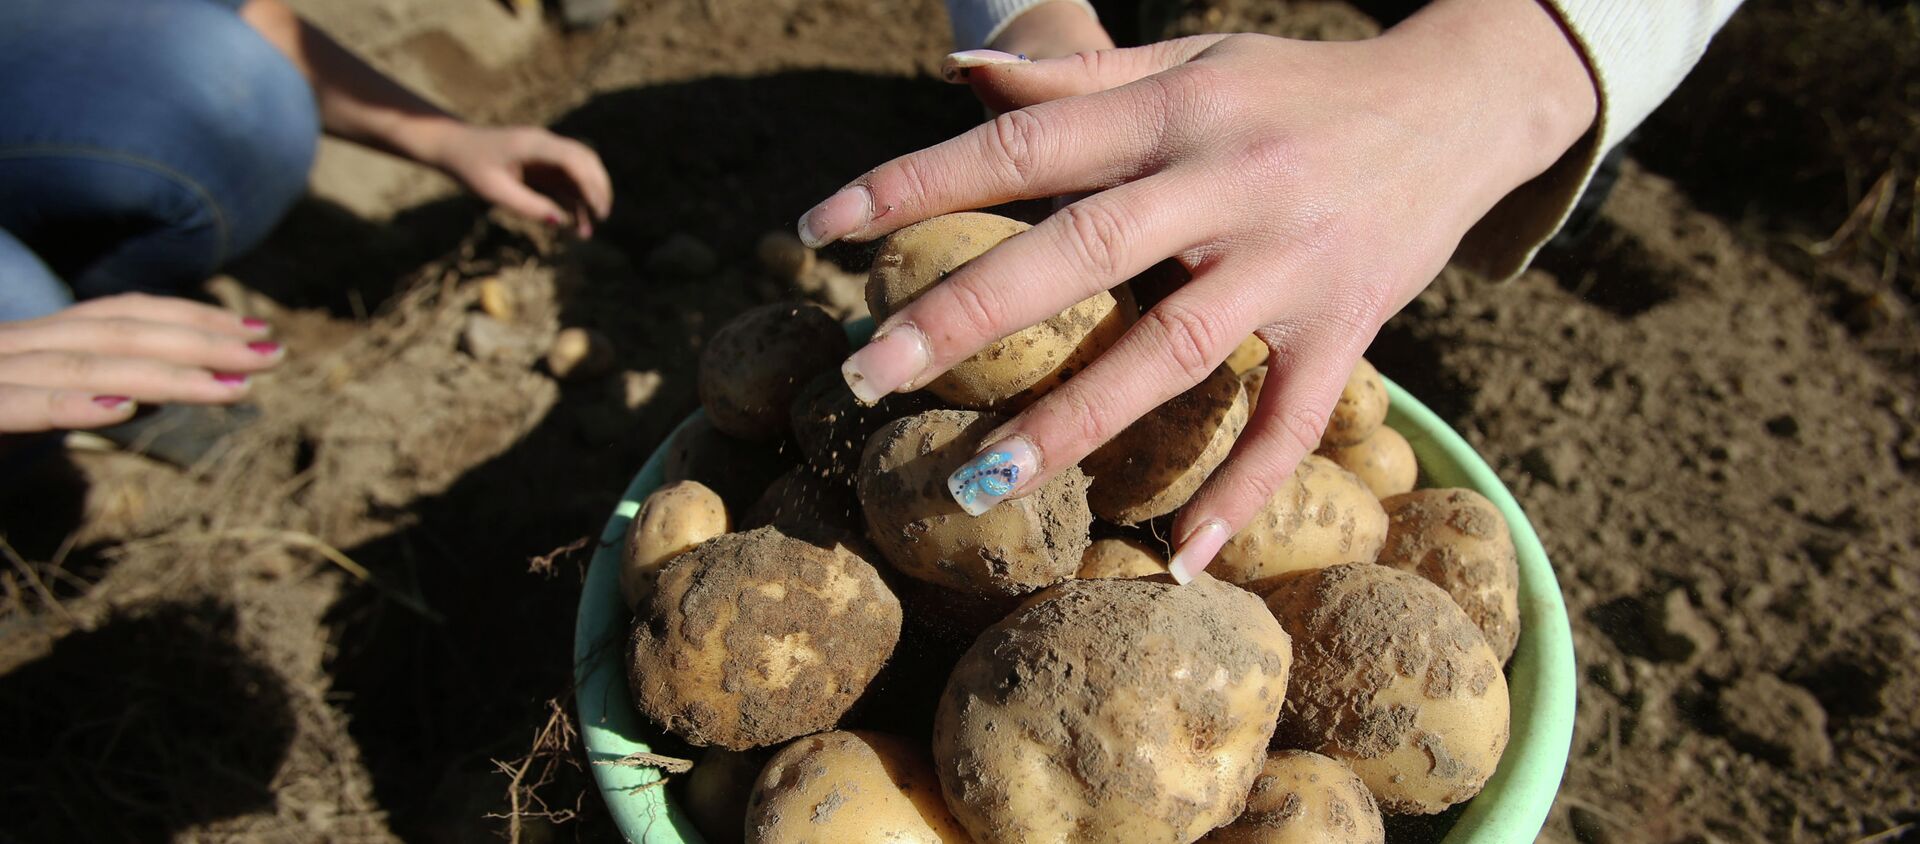 Уборка урожая картофеля. Архивное фото - Sputnik Кыргызстан, 1920, 24.02.2021